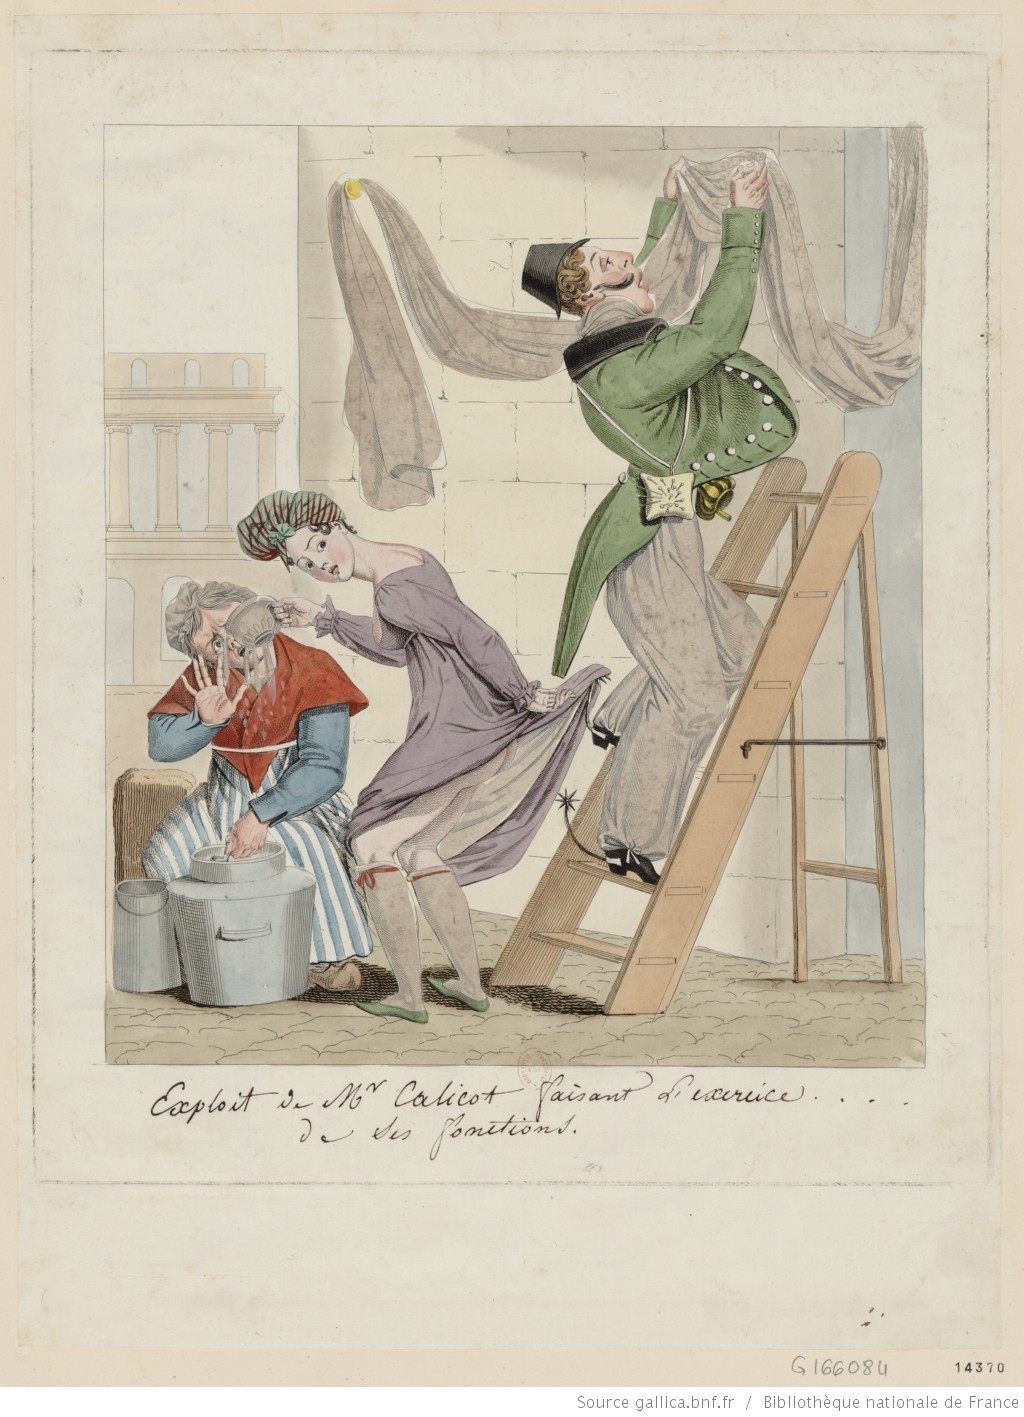 Fig. 6 Exploit de M.r Calicot faisant l’exercice…… de ses fonctions, gravure à l’eau-forte coloriée, 1817, chez Janet. Photo Gallica.
